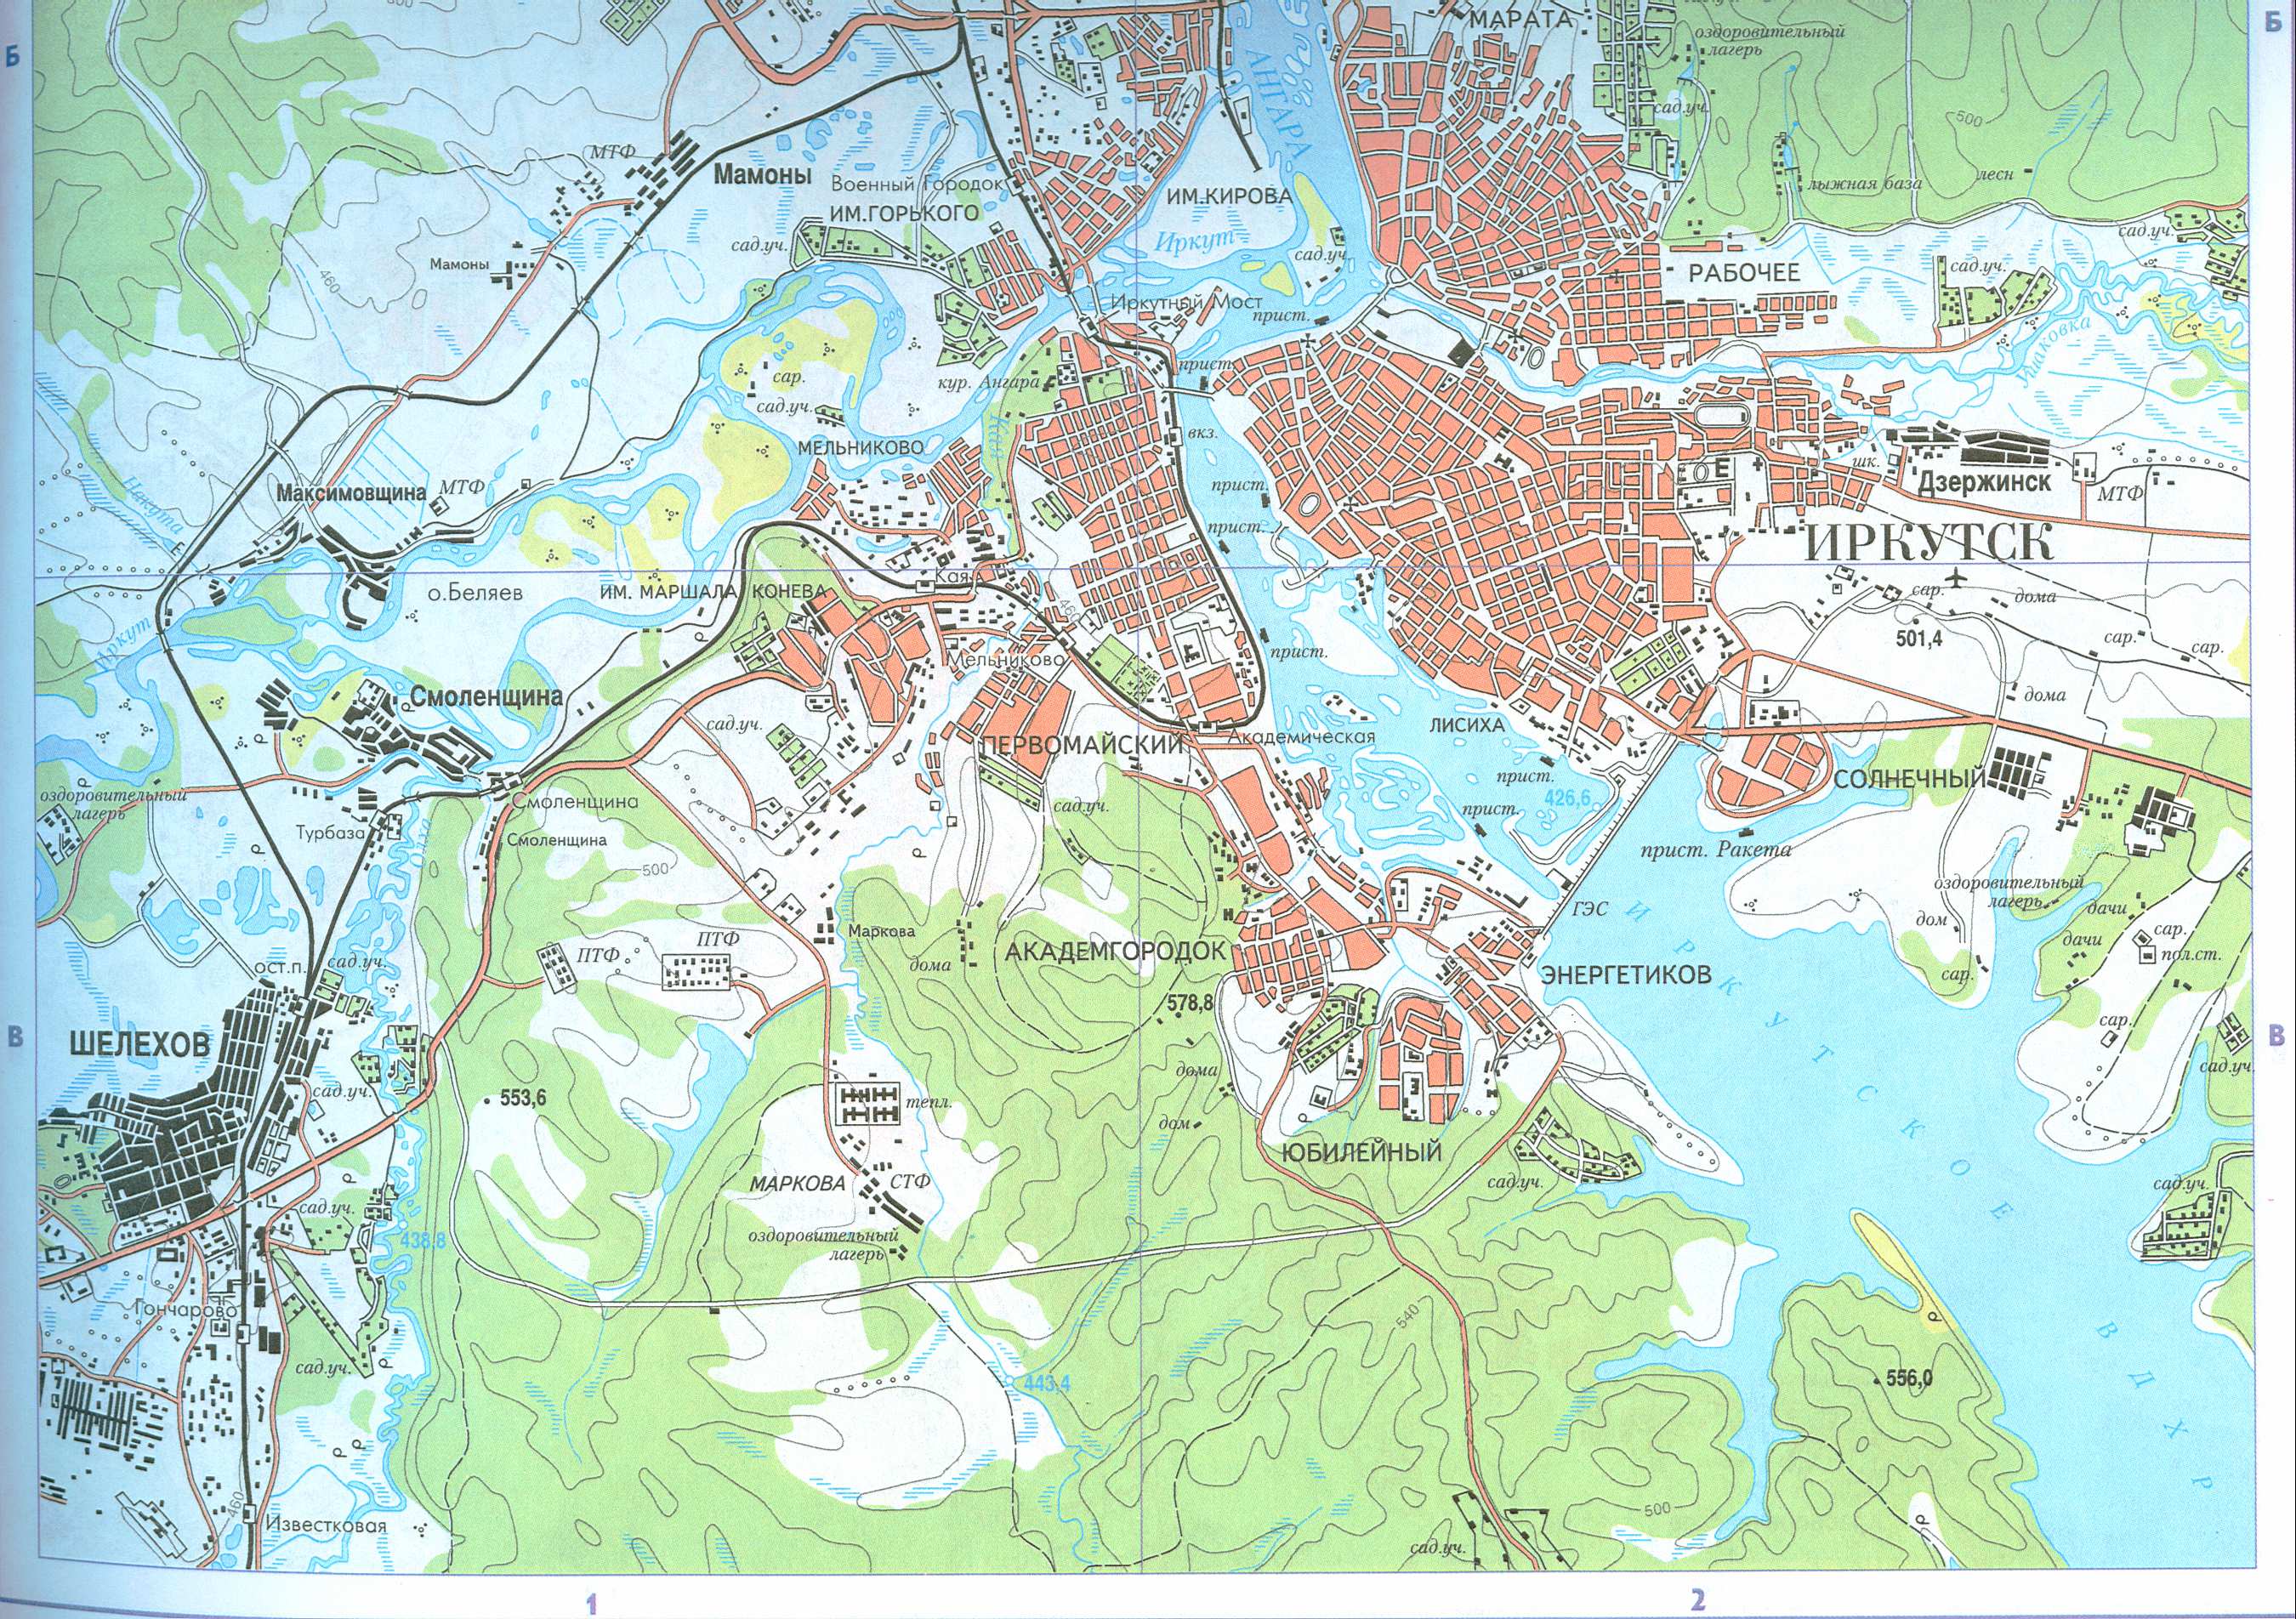 Карта Иркутска и окрестностей. Подробная карта автомобильных дорог города Иркутск с пригородами, A1 - 